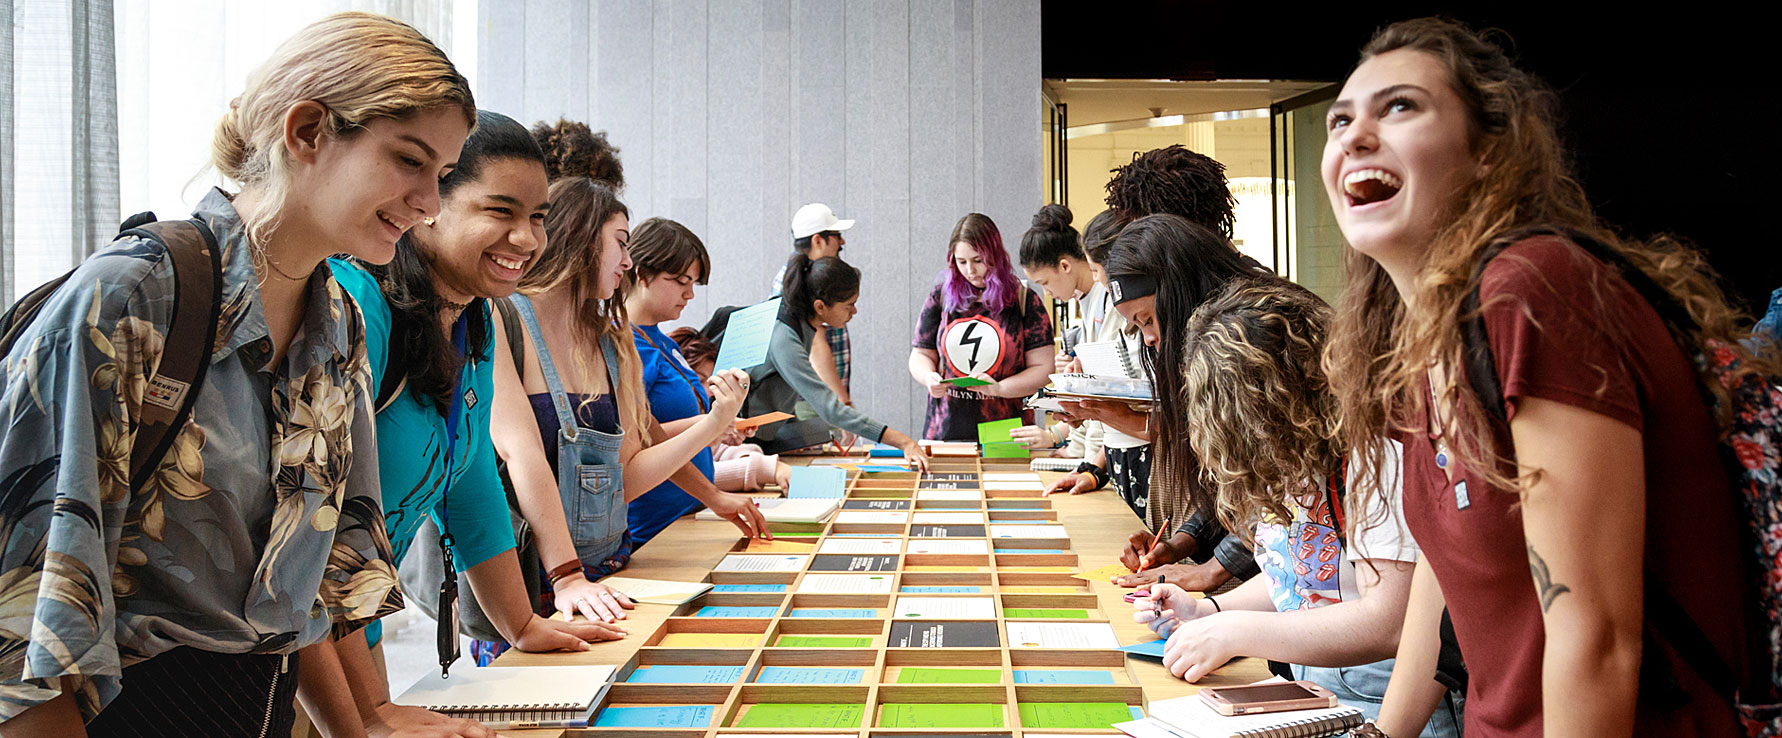 Pessoas curtindo a seção Future City Lab da Nova York na exposição Core no Museu da Cidade de Nova York